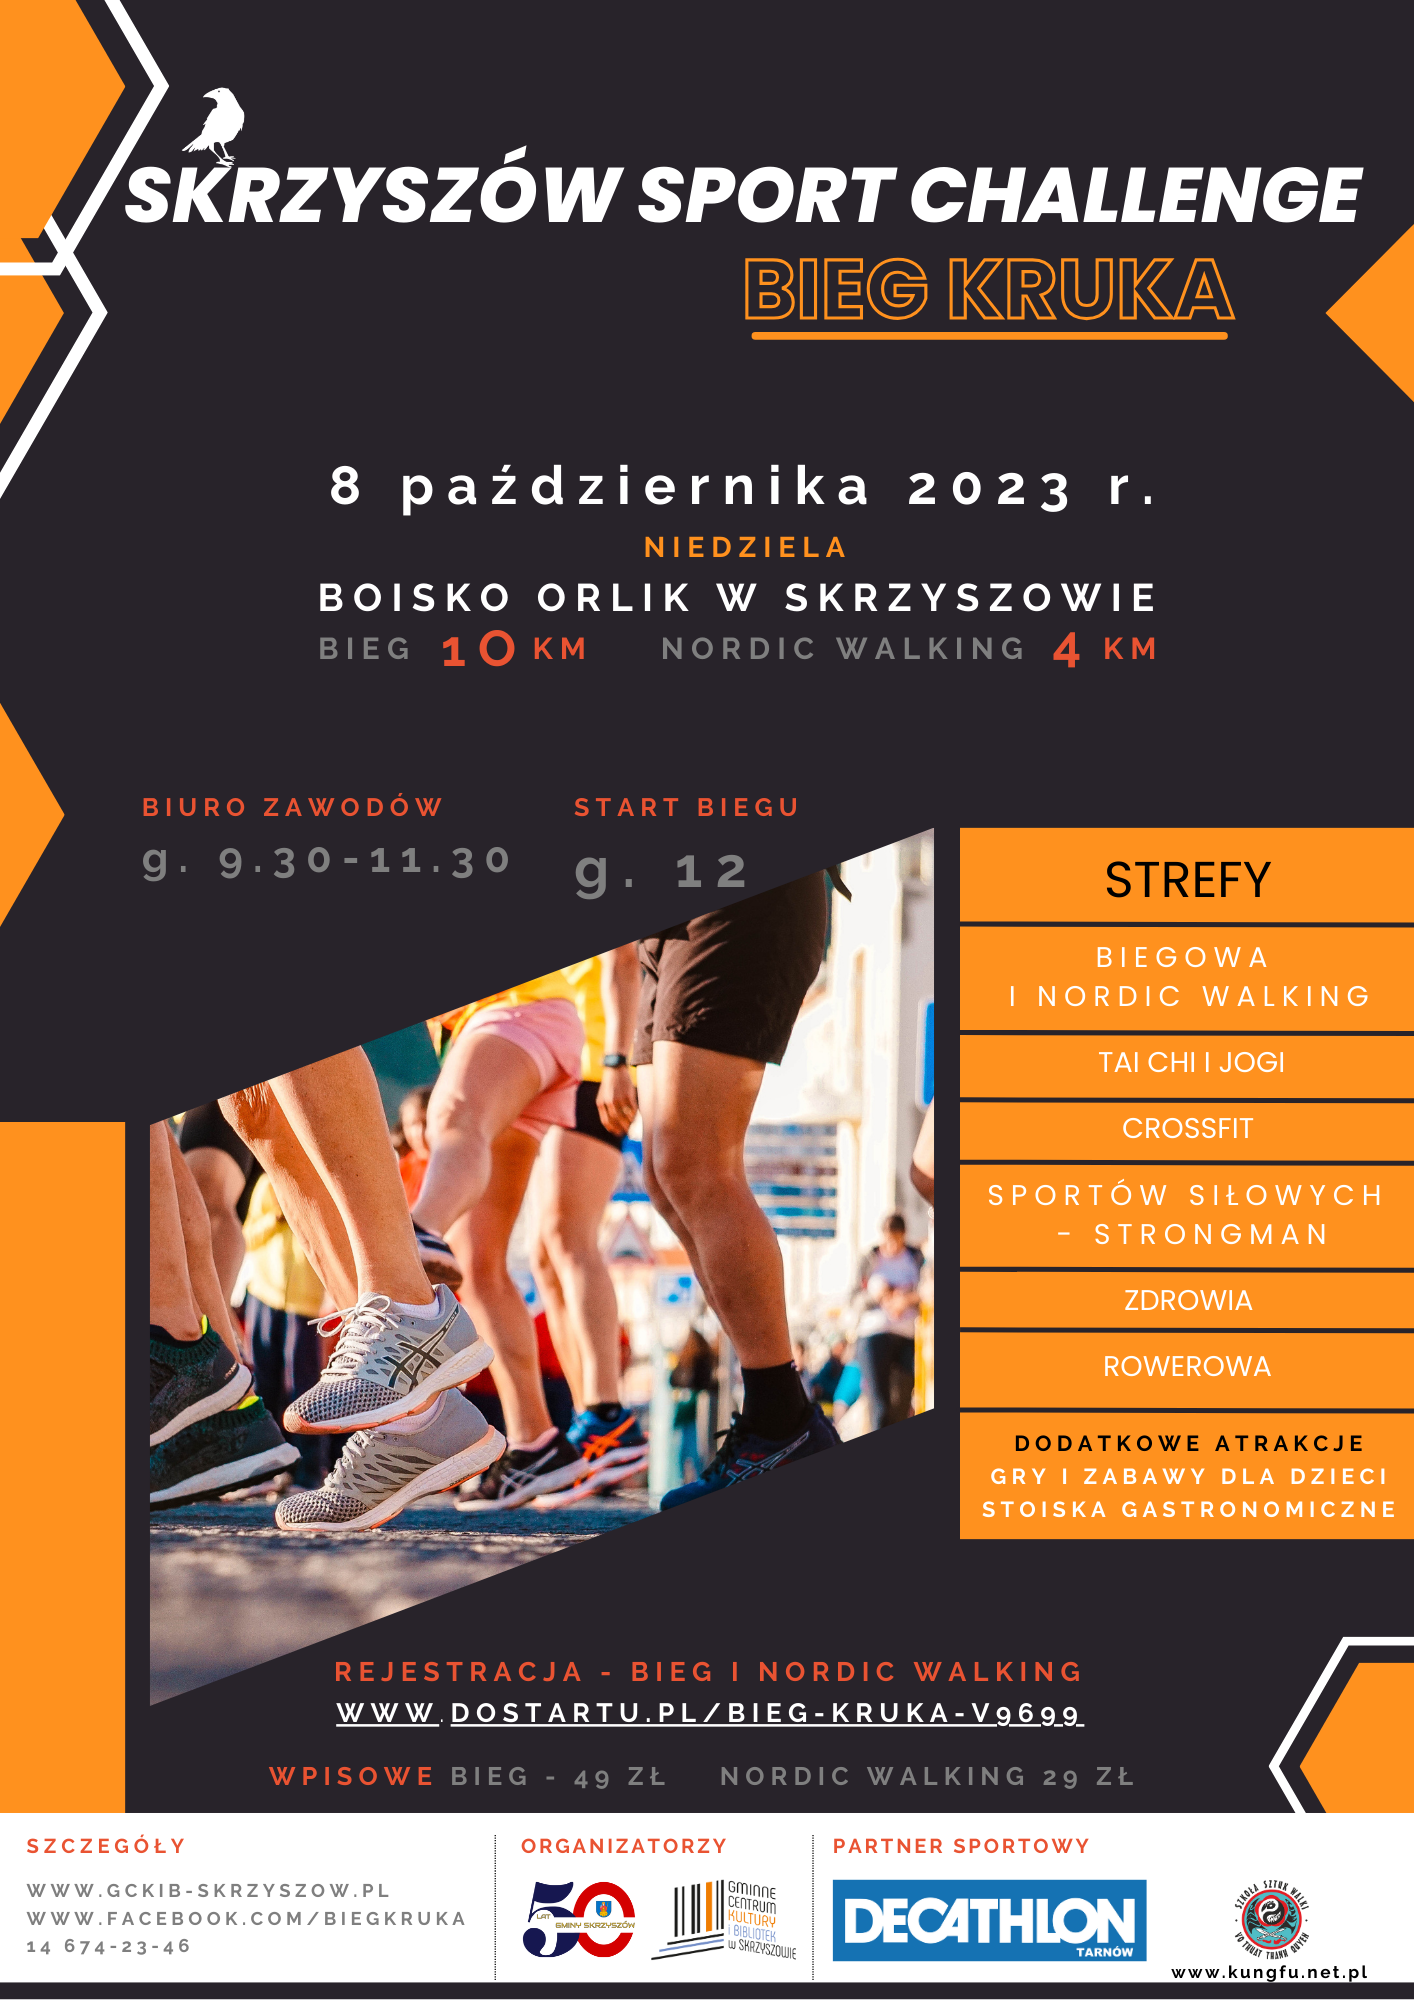 Bieg Kruka Skrzyszów Sport Challenge